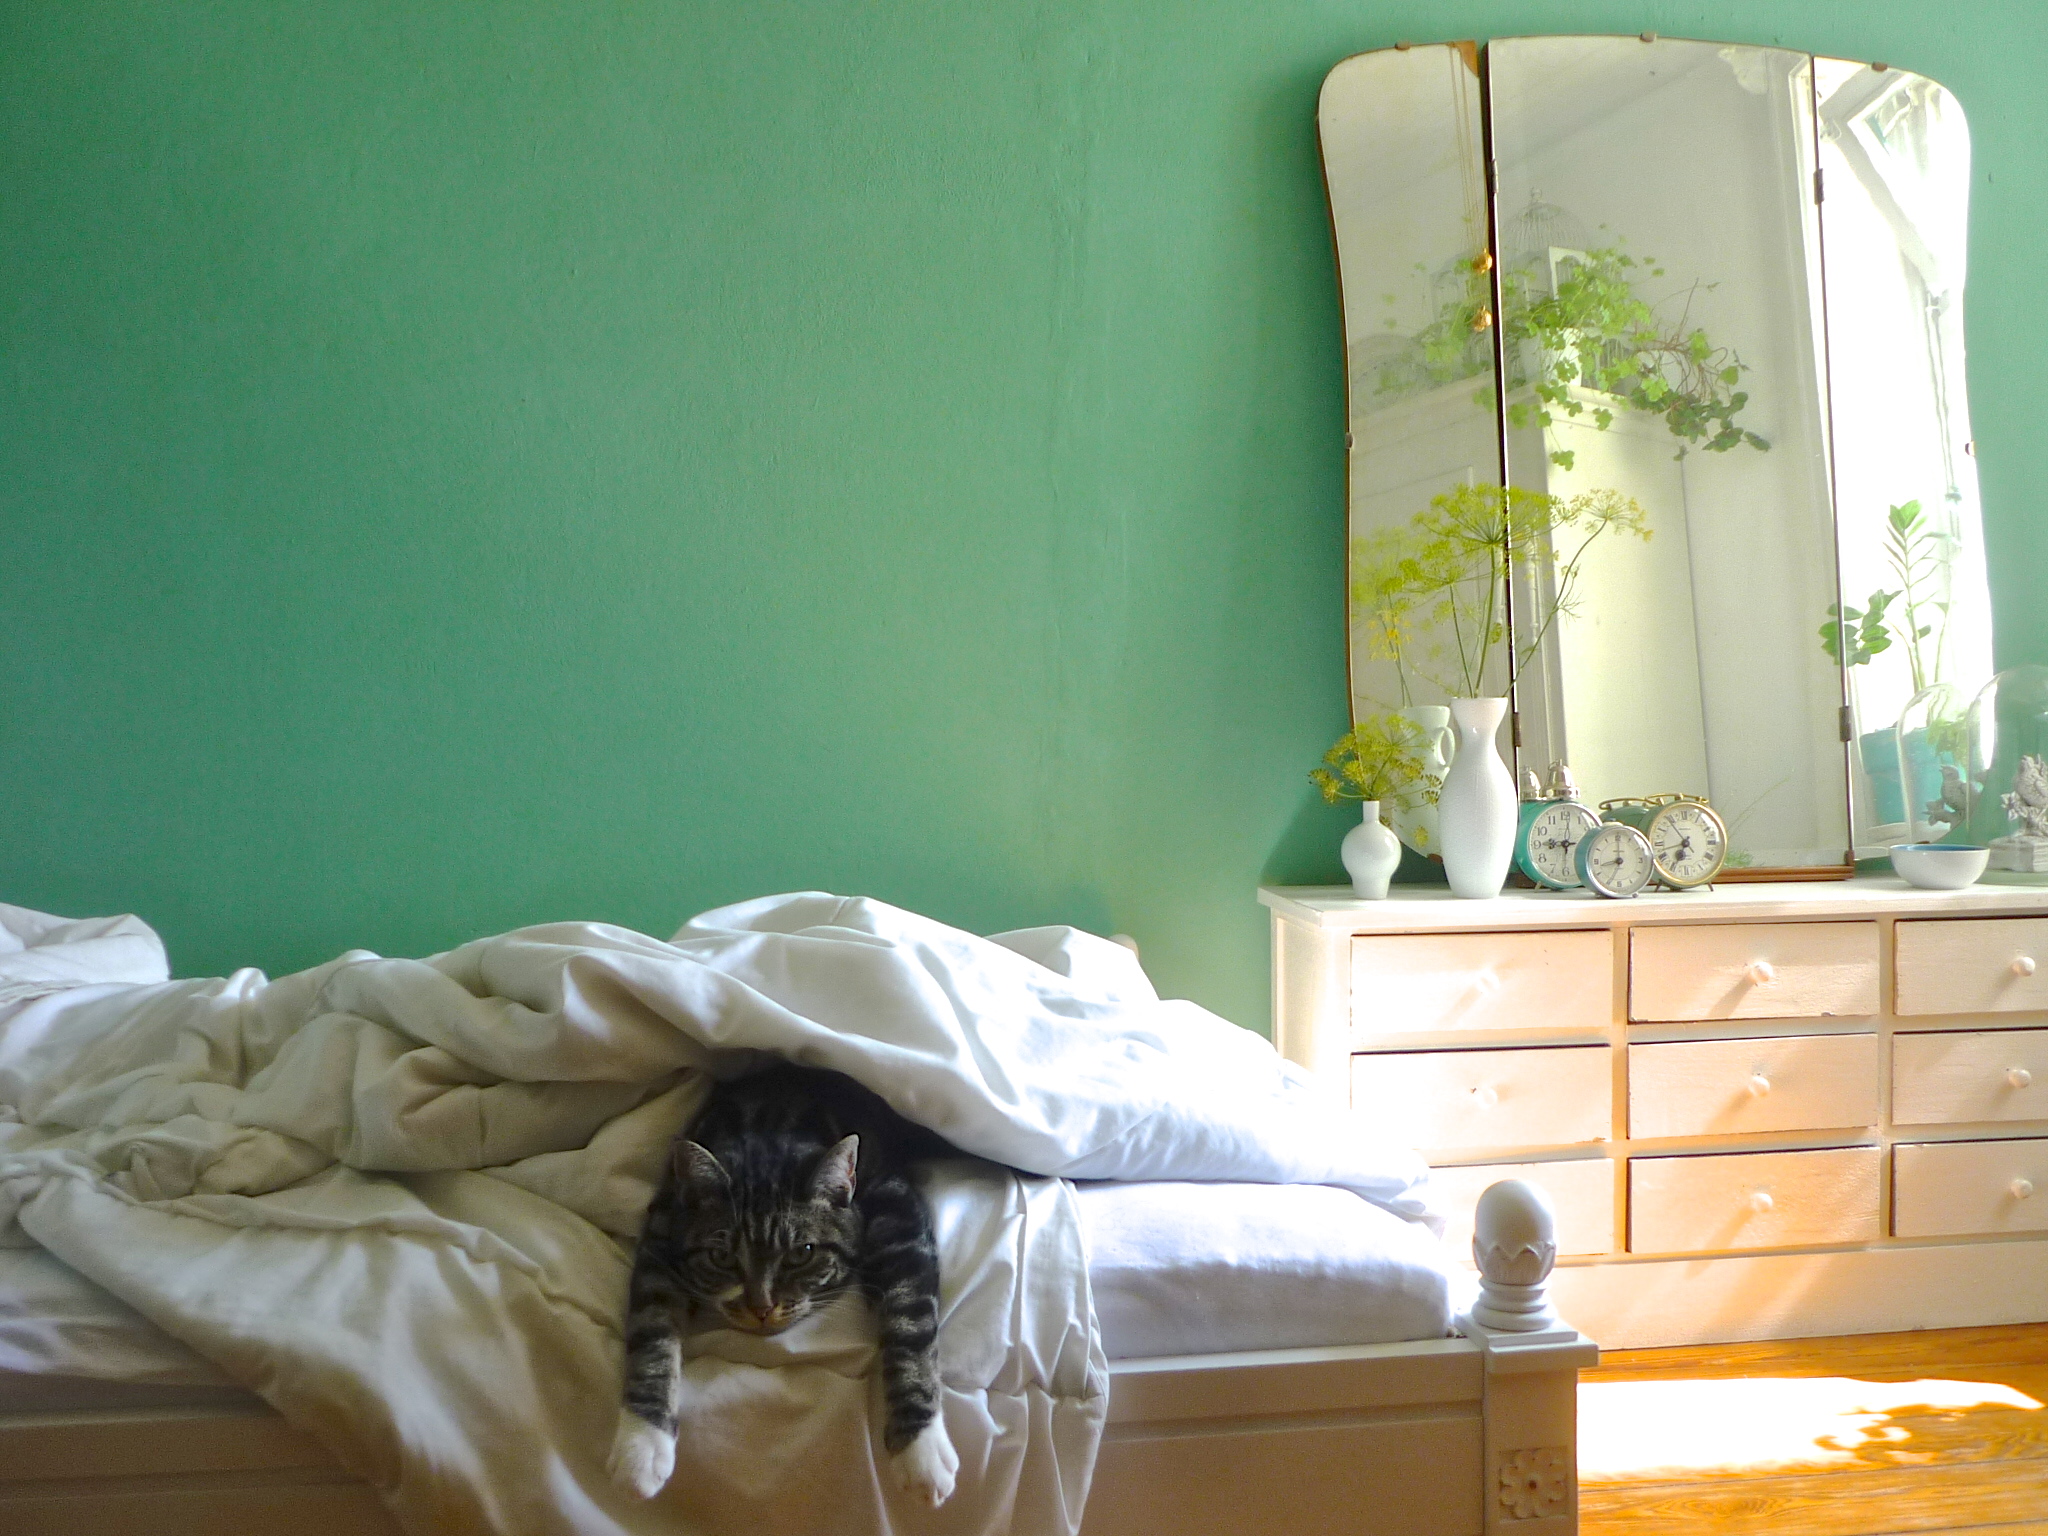 schlafzimmer solebich renovieren einrichtungsideen mimameise farbe wandfarbe streichen altbau bilderwand dunkelblau pinkelt hochglanz plastik schönsten